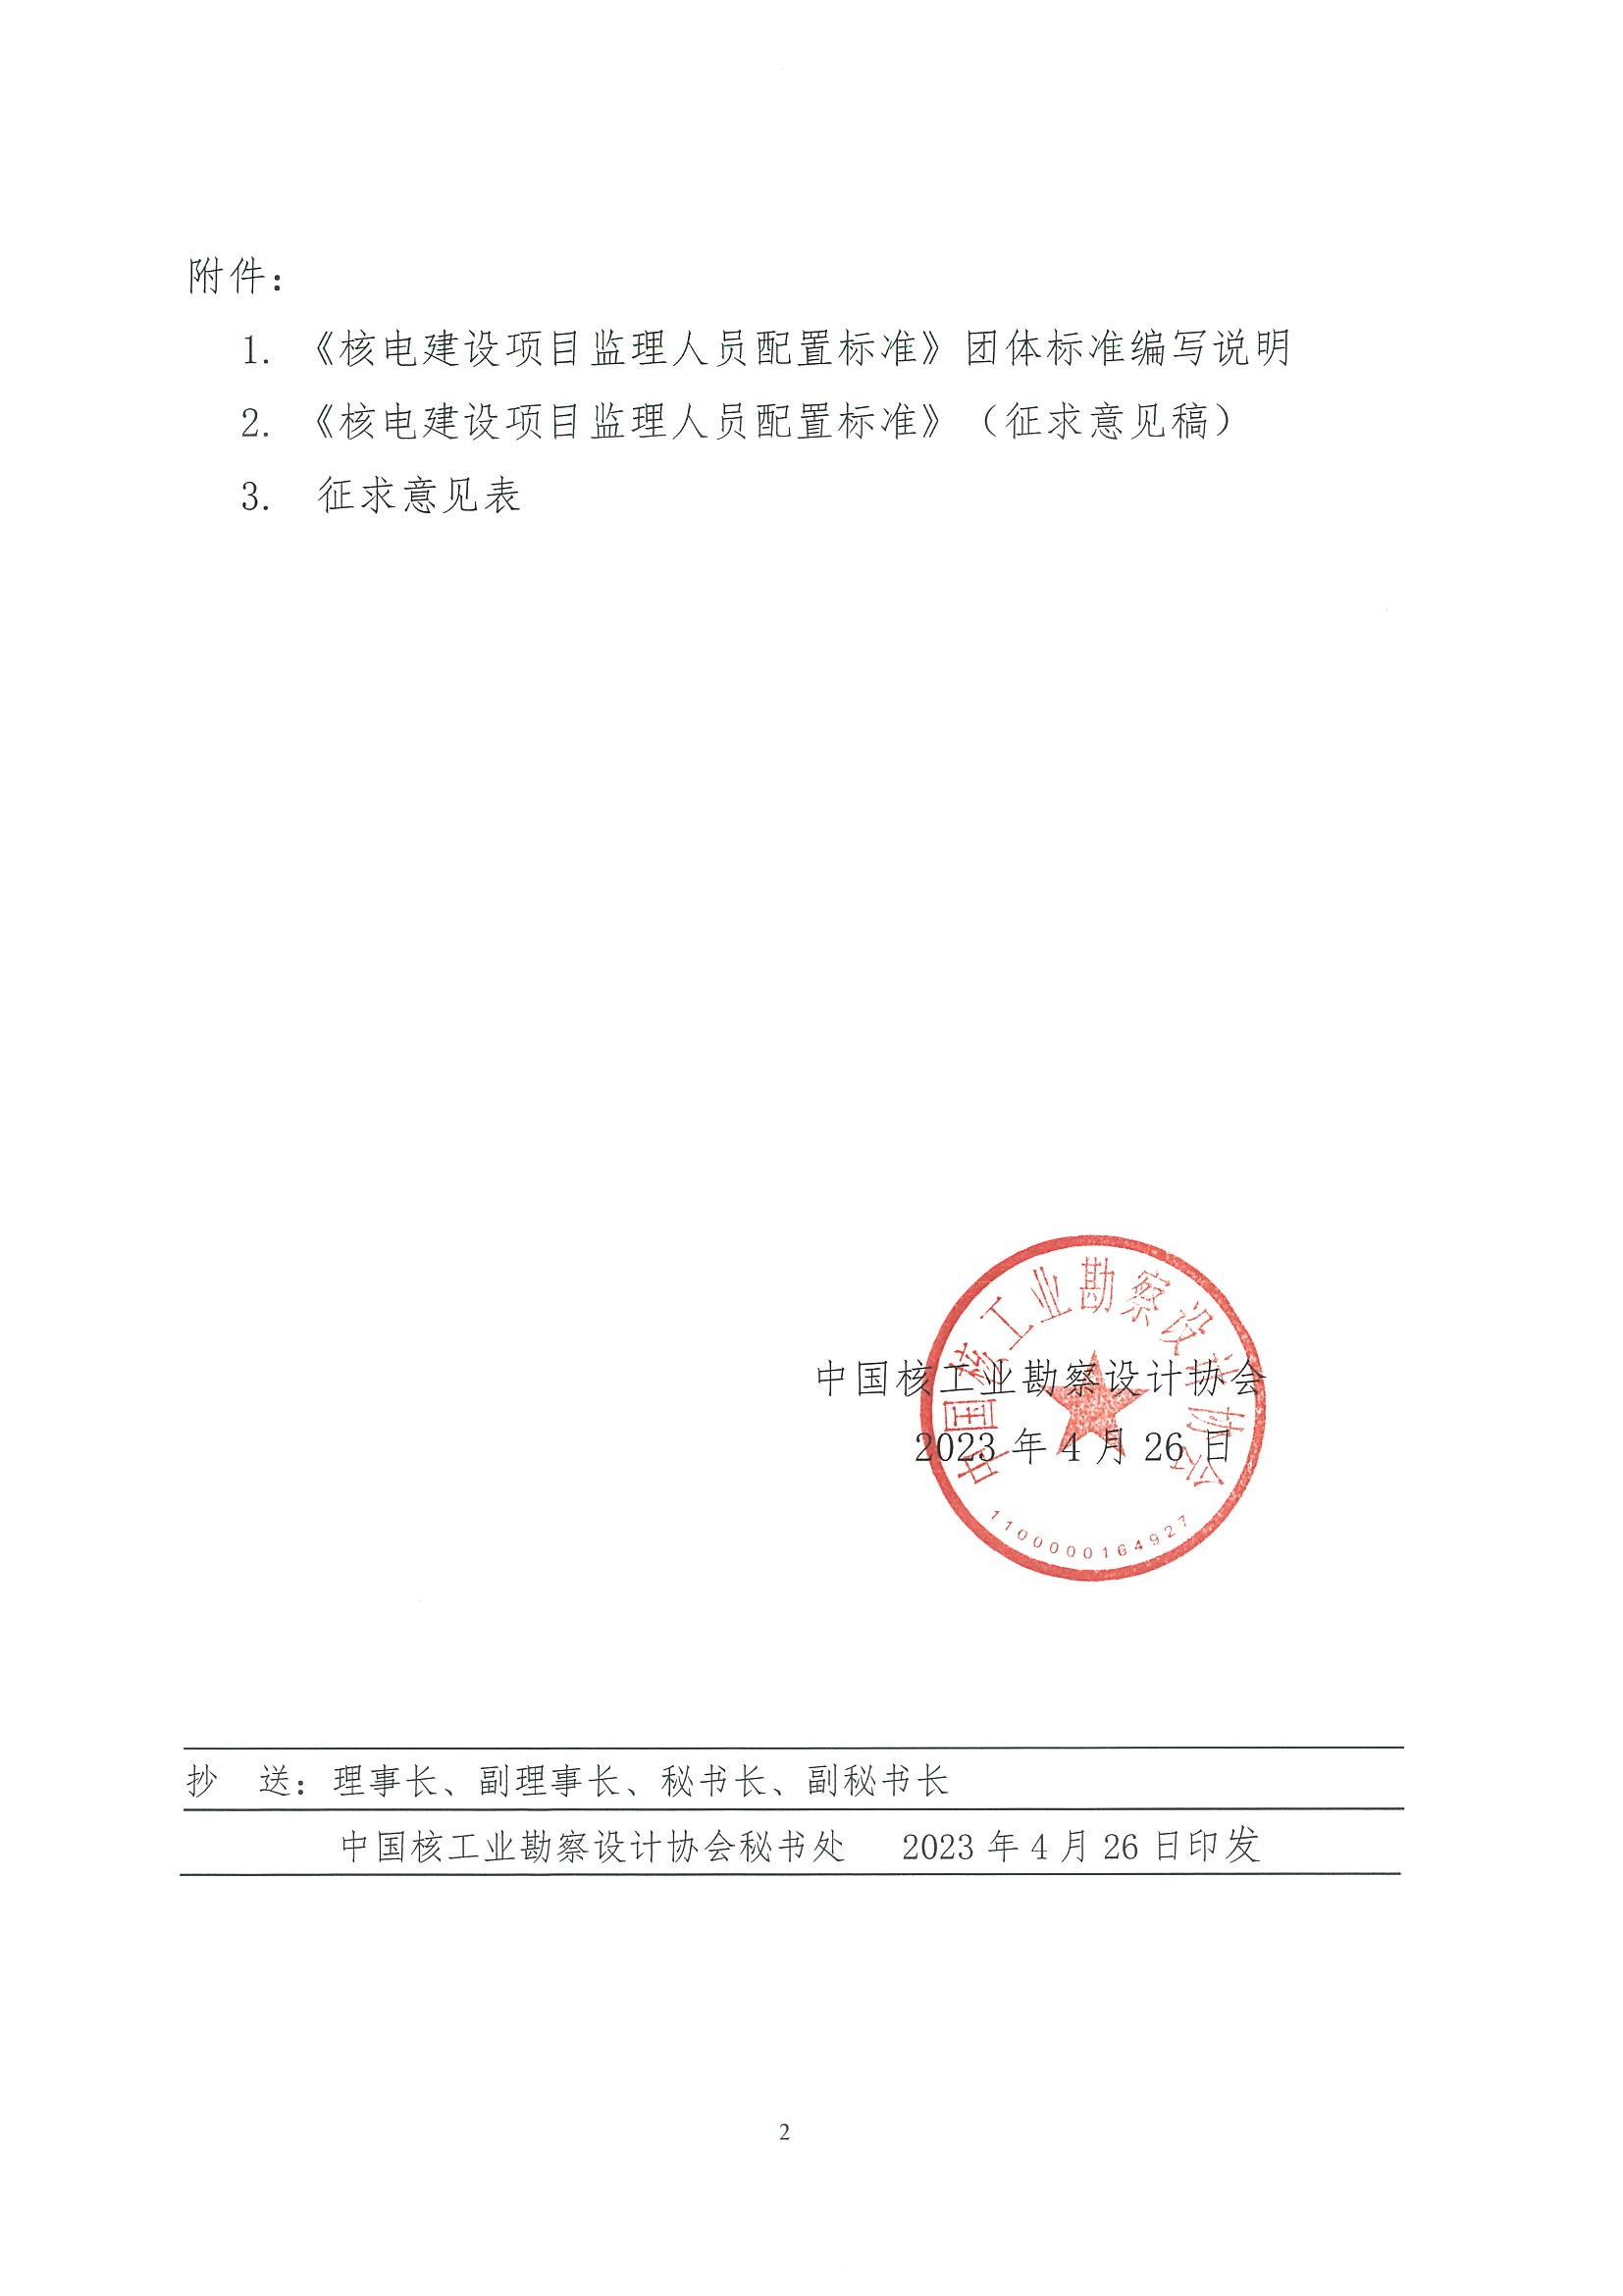 核设协[2023]77号 关于中国核工业勘察设计协会立项的团体标准《核电建设项目监理人员配置标准》公开征求意见的通知_页面_2.jpg